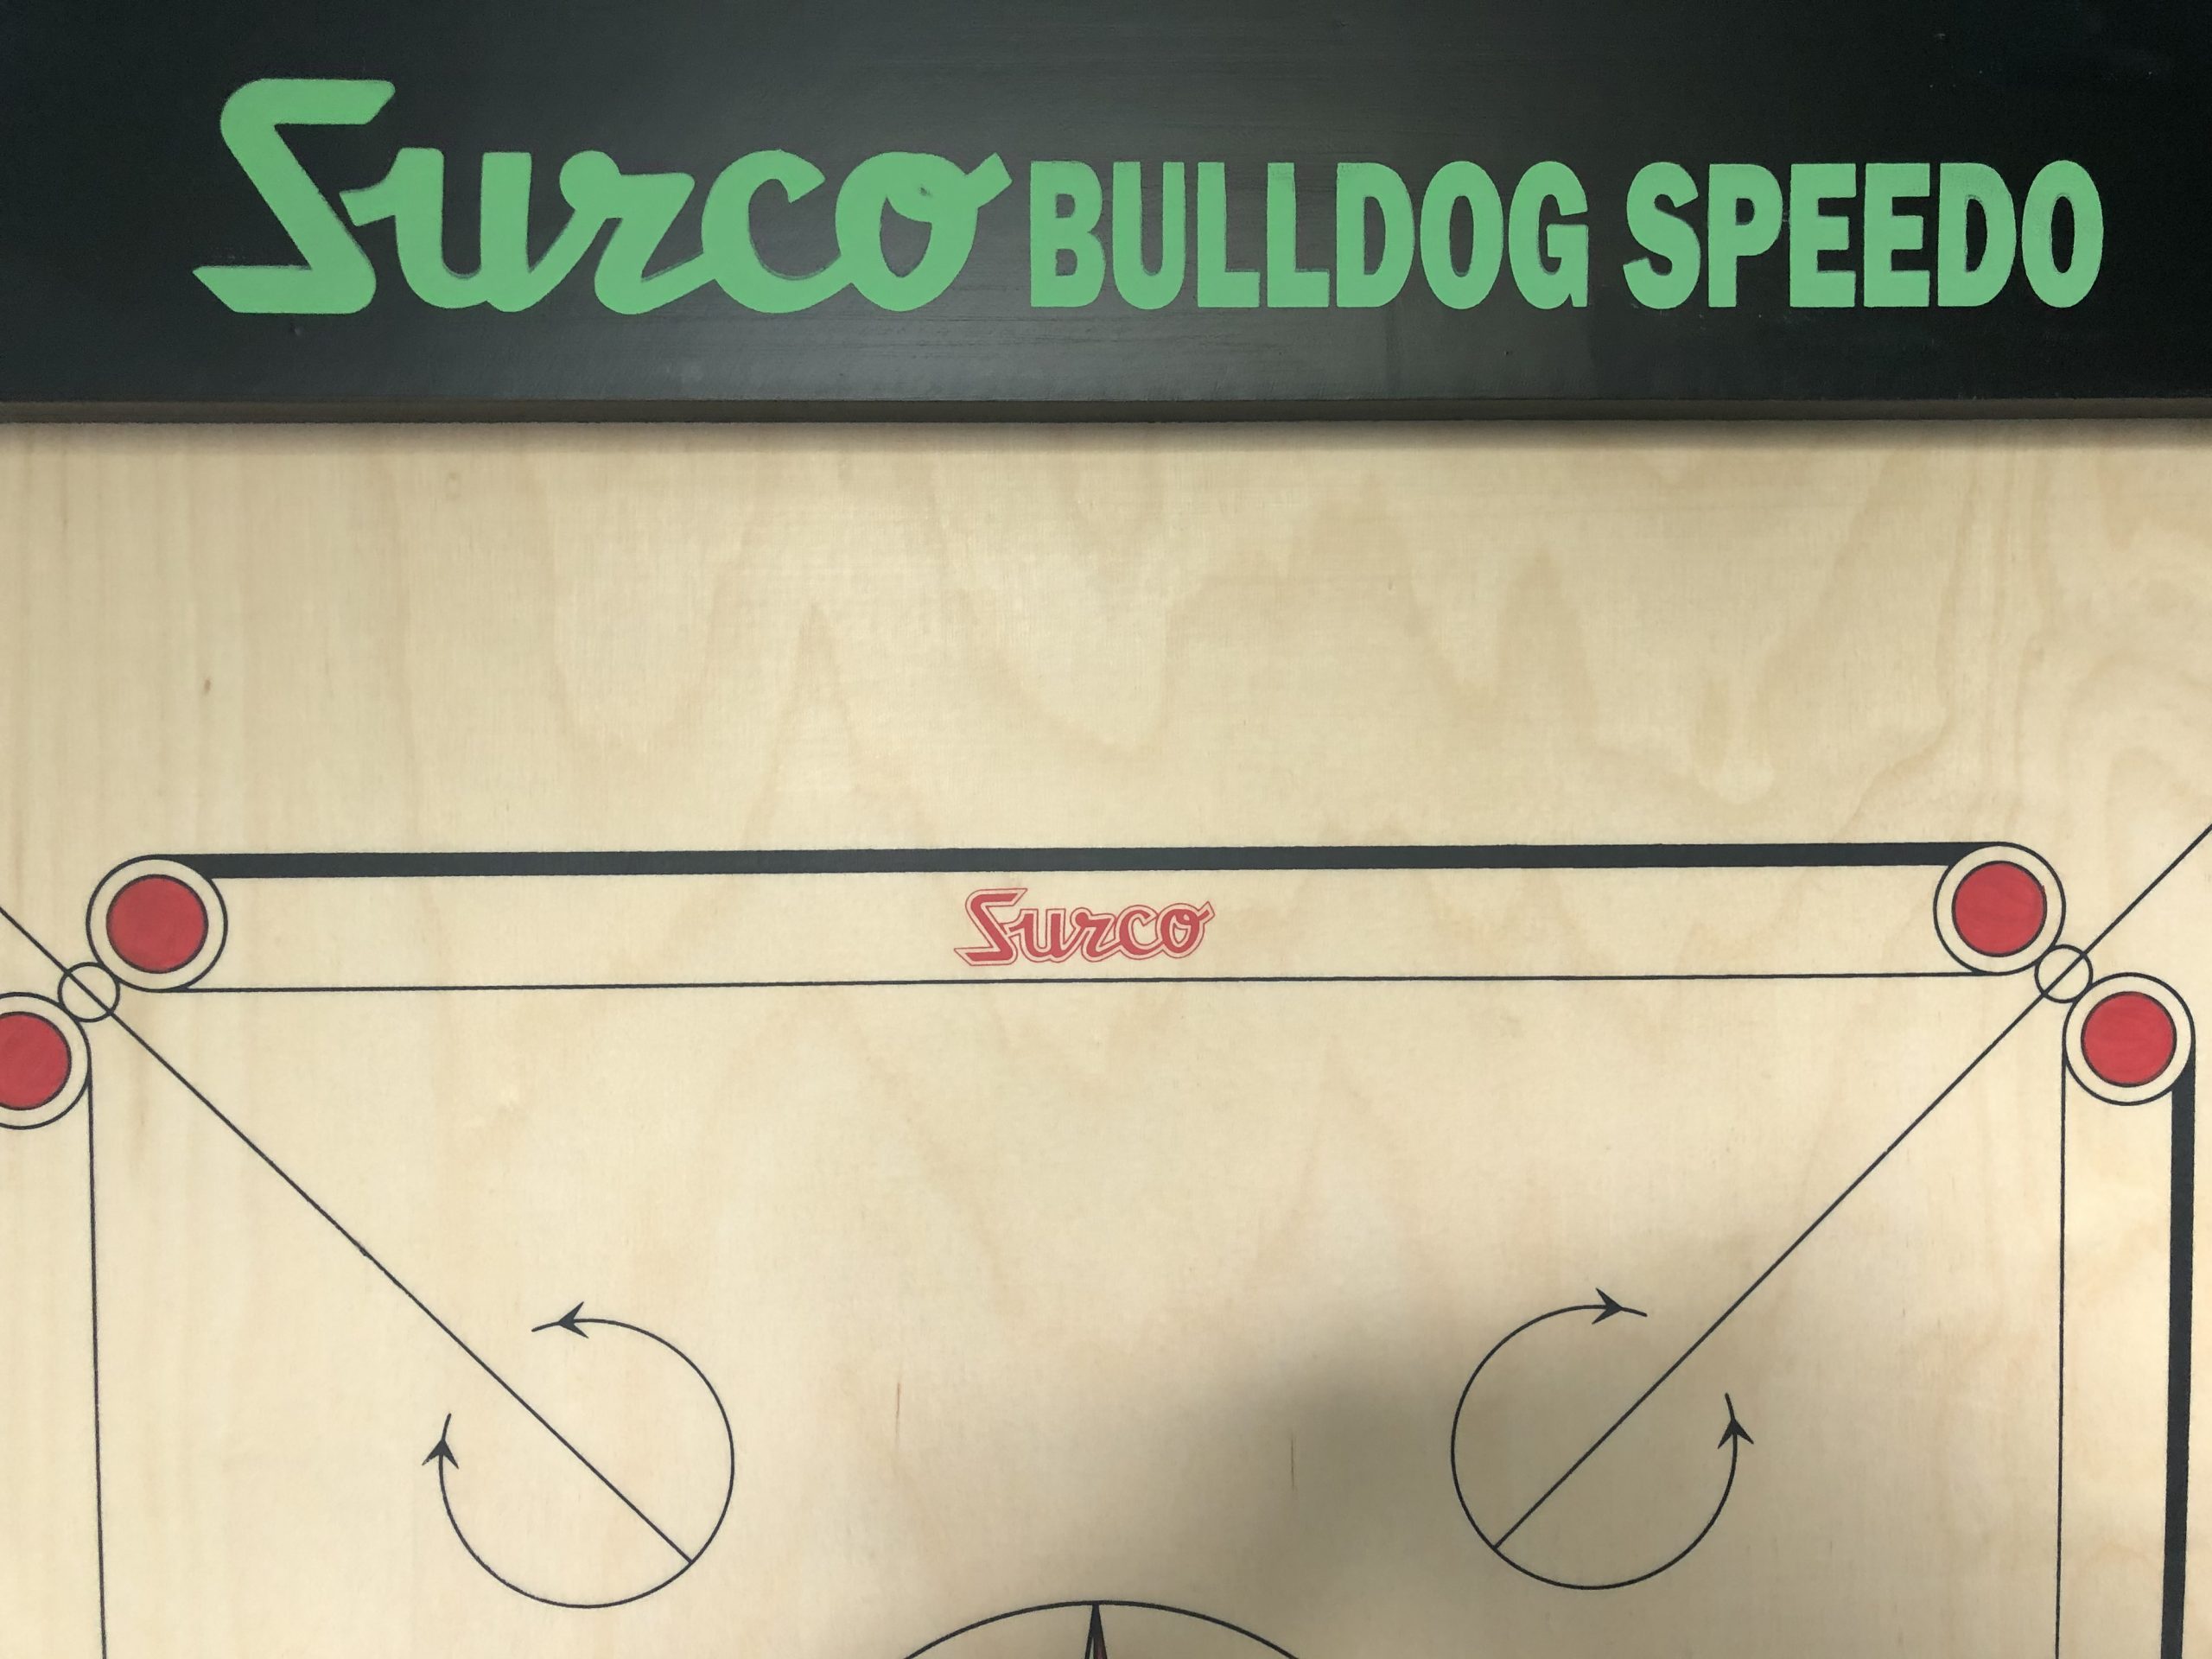 surco bulldog carrom board price